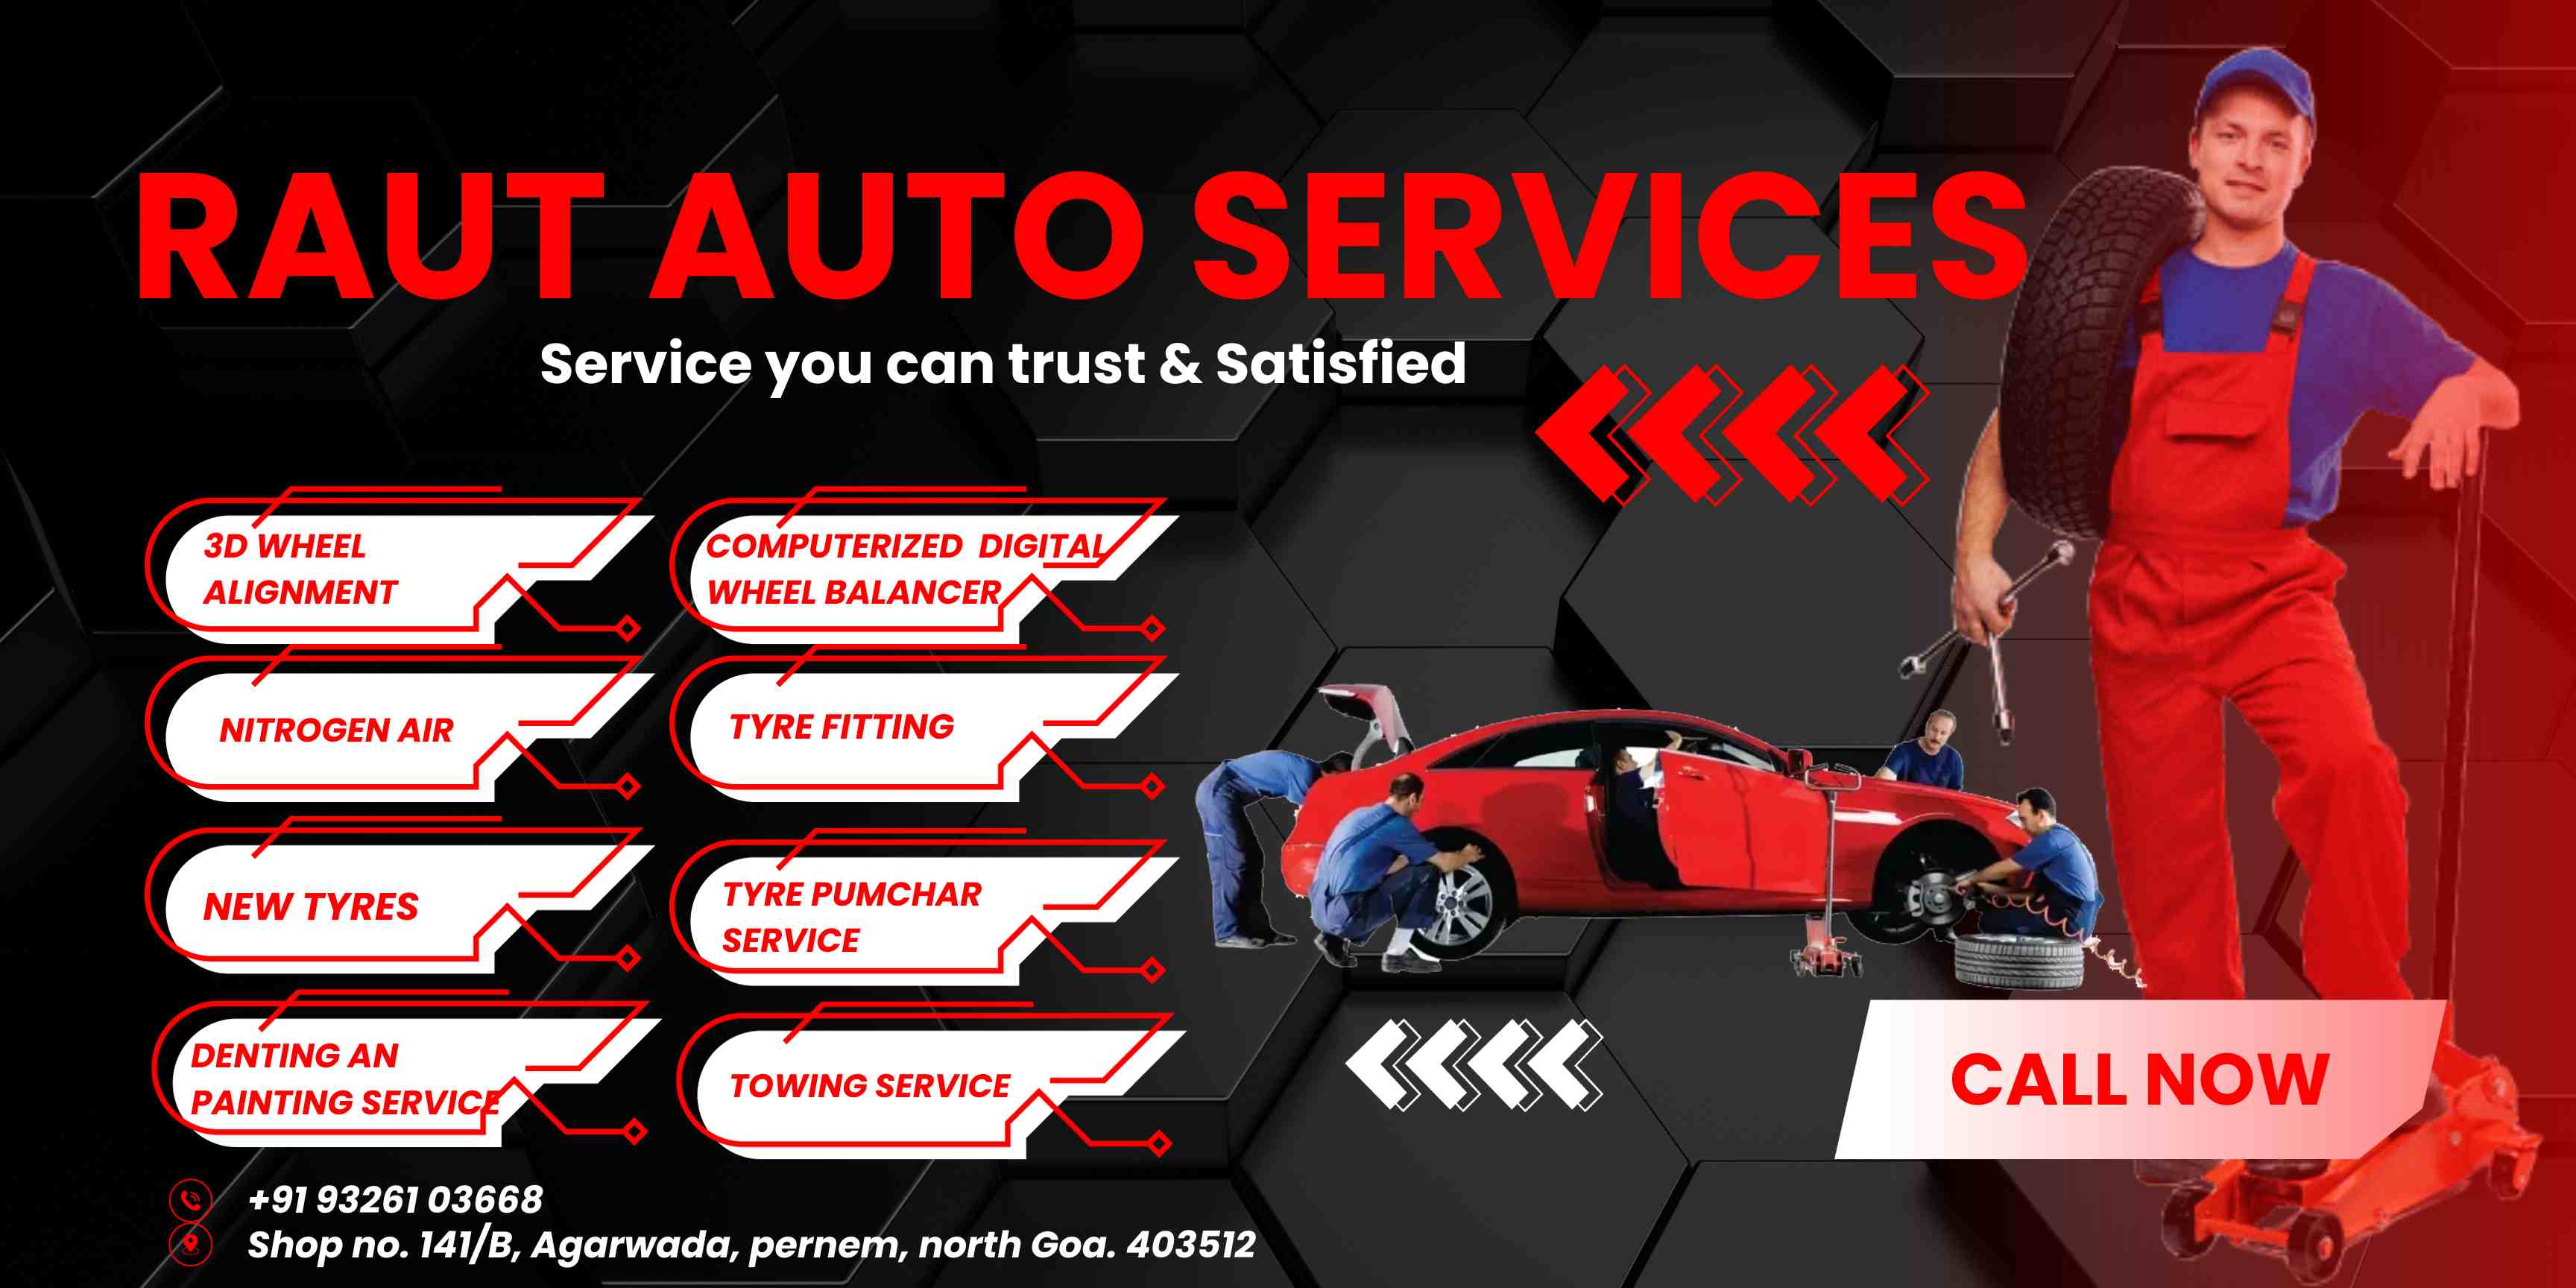 Raut Auto Services